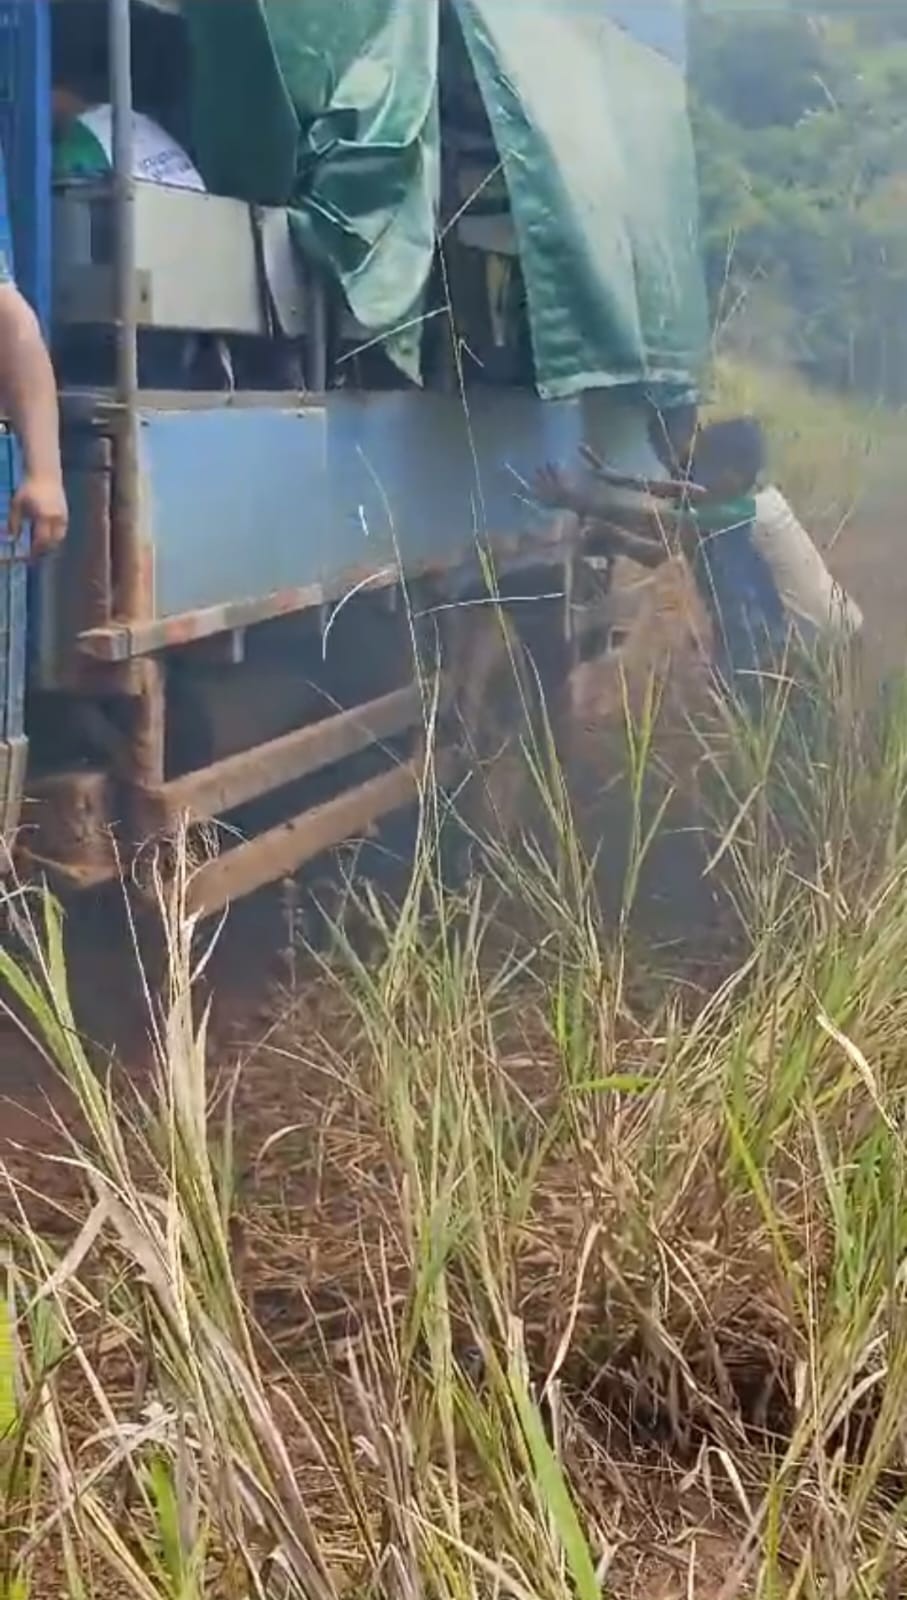 Com estrada cheia de lama, alunos empurram caminhão que fazia transporte escolar no Acre; VÍDEO